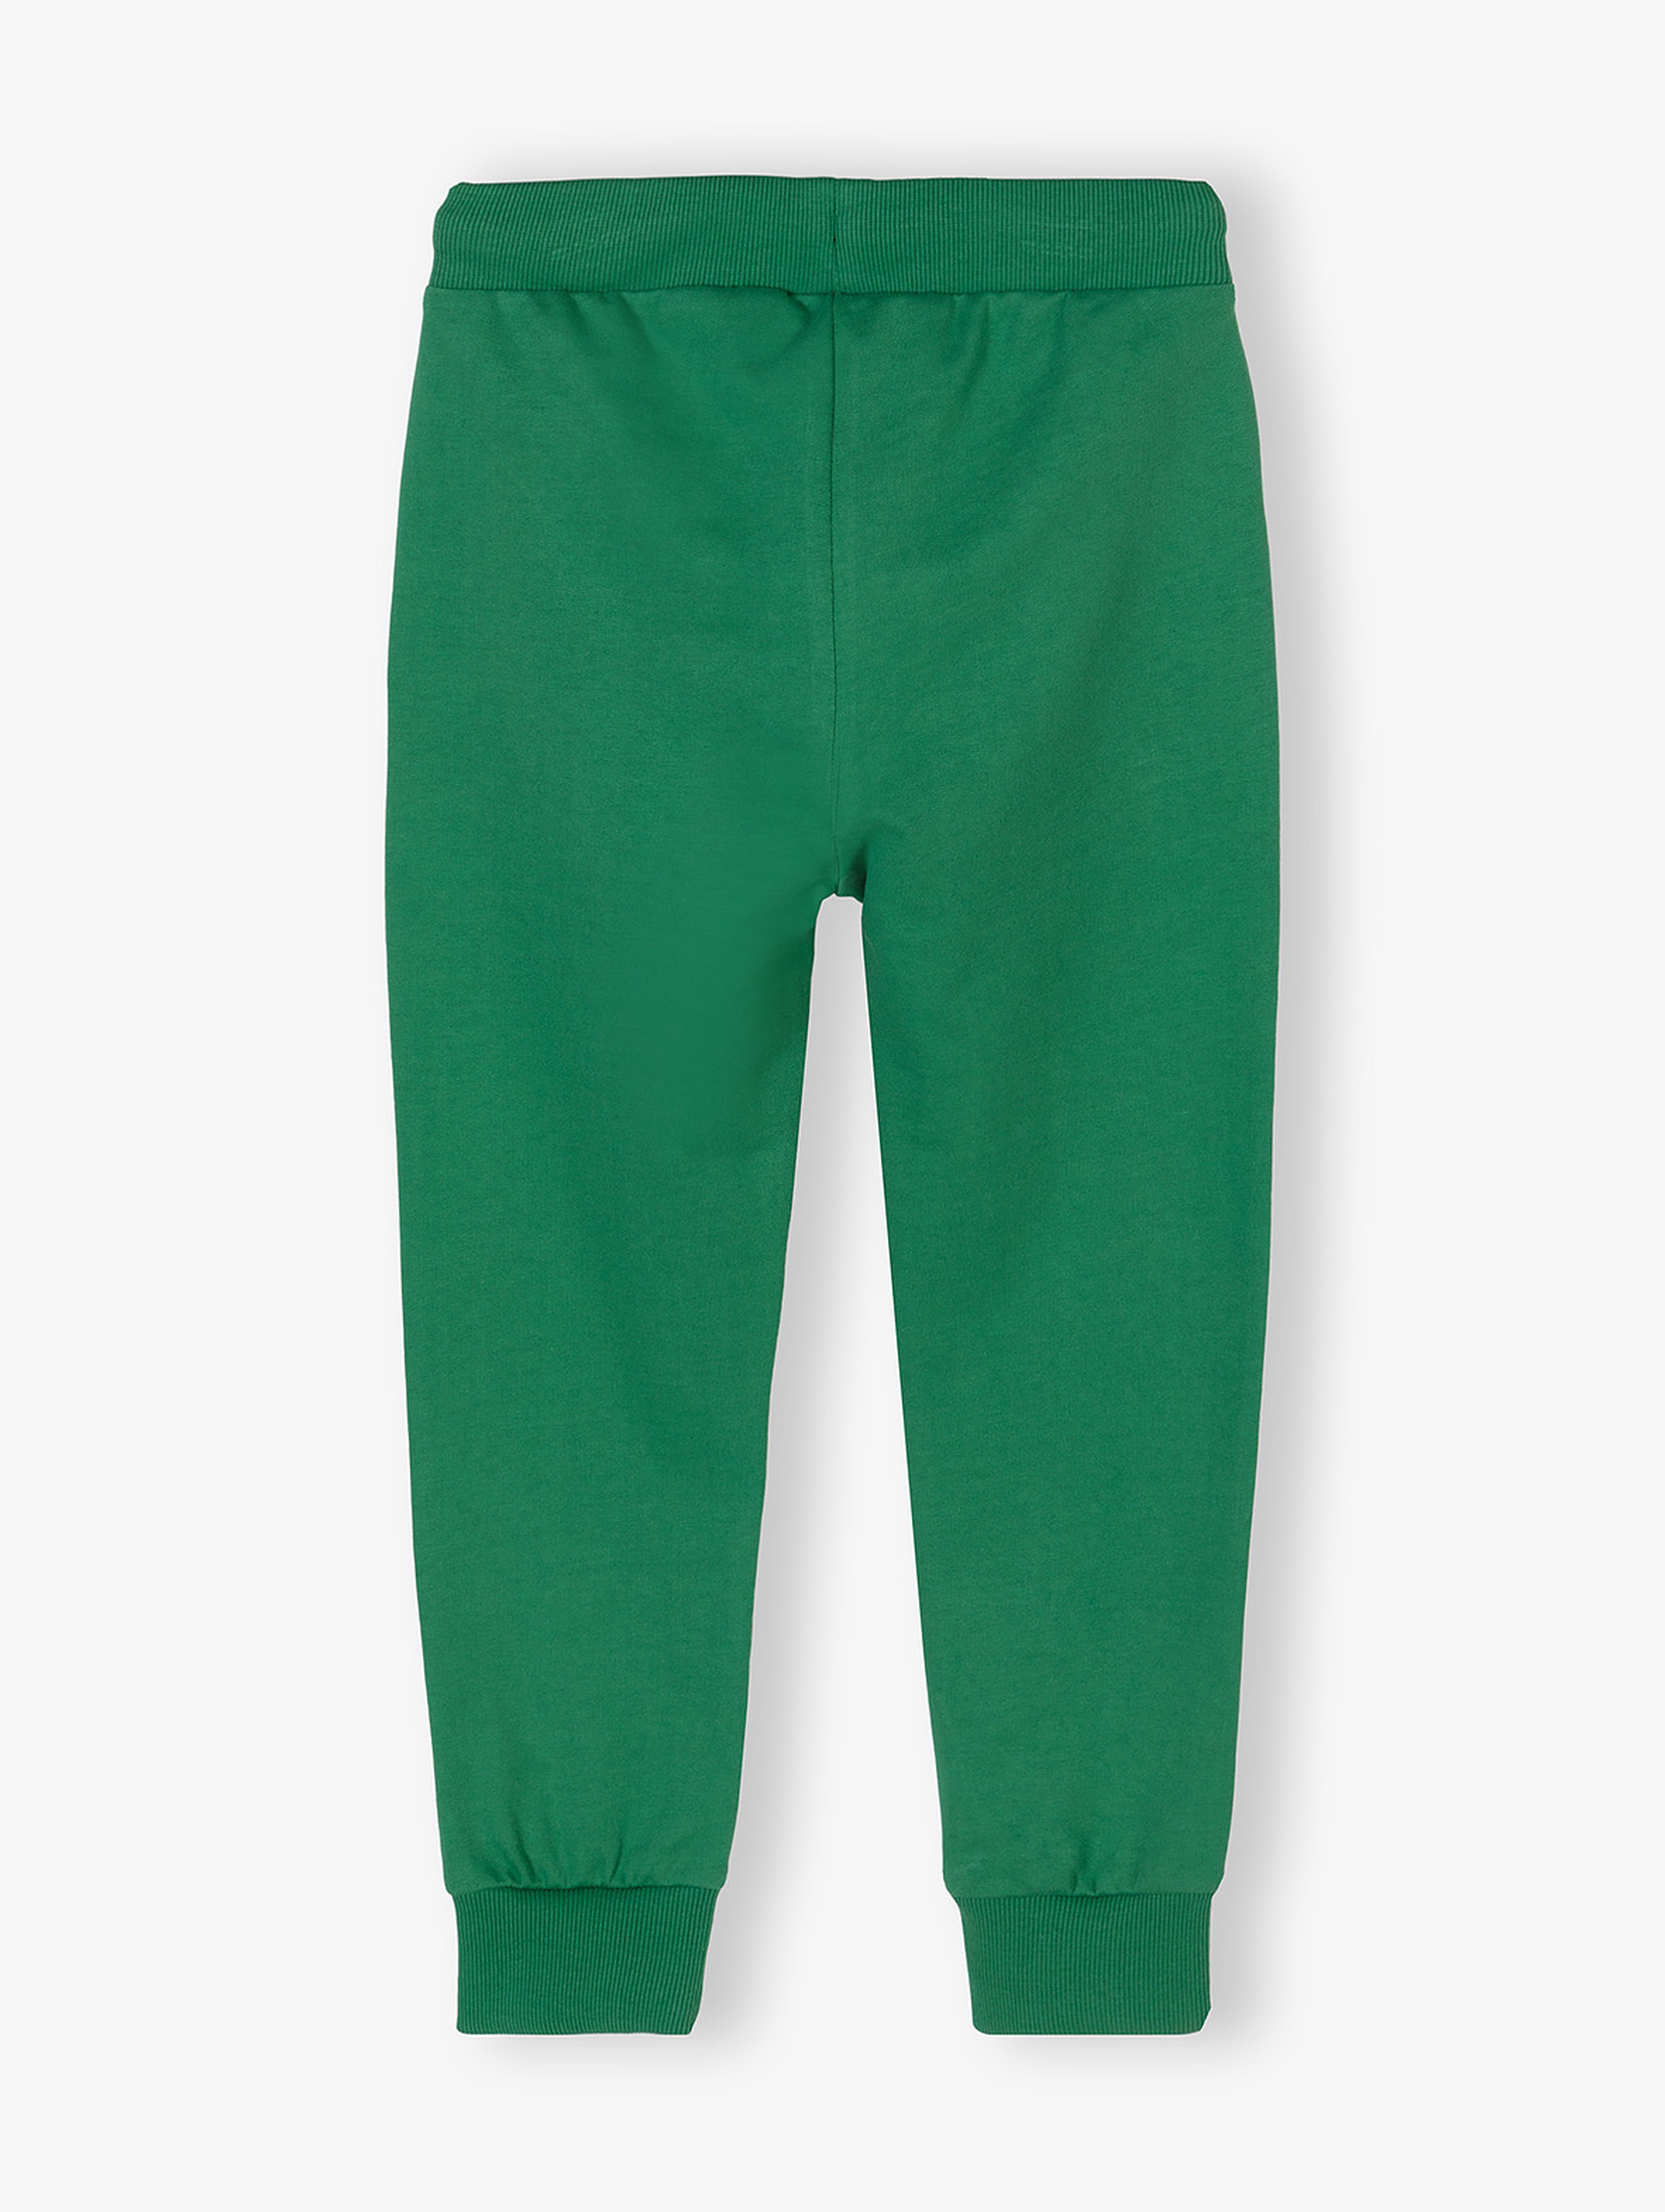 Zielone spodnie dresowe regular fit chłopięce - Dino Team